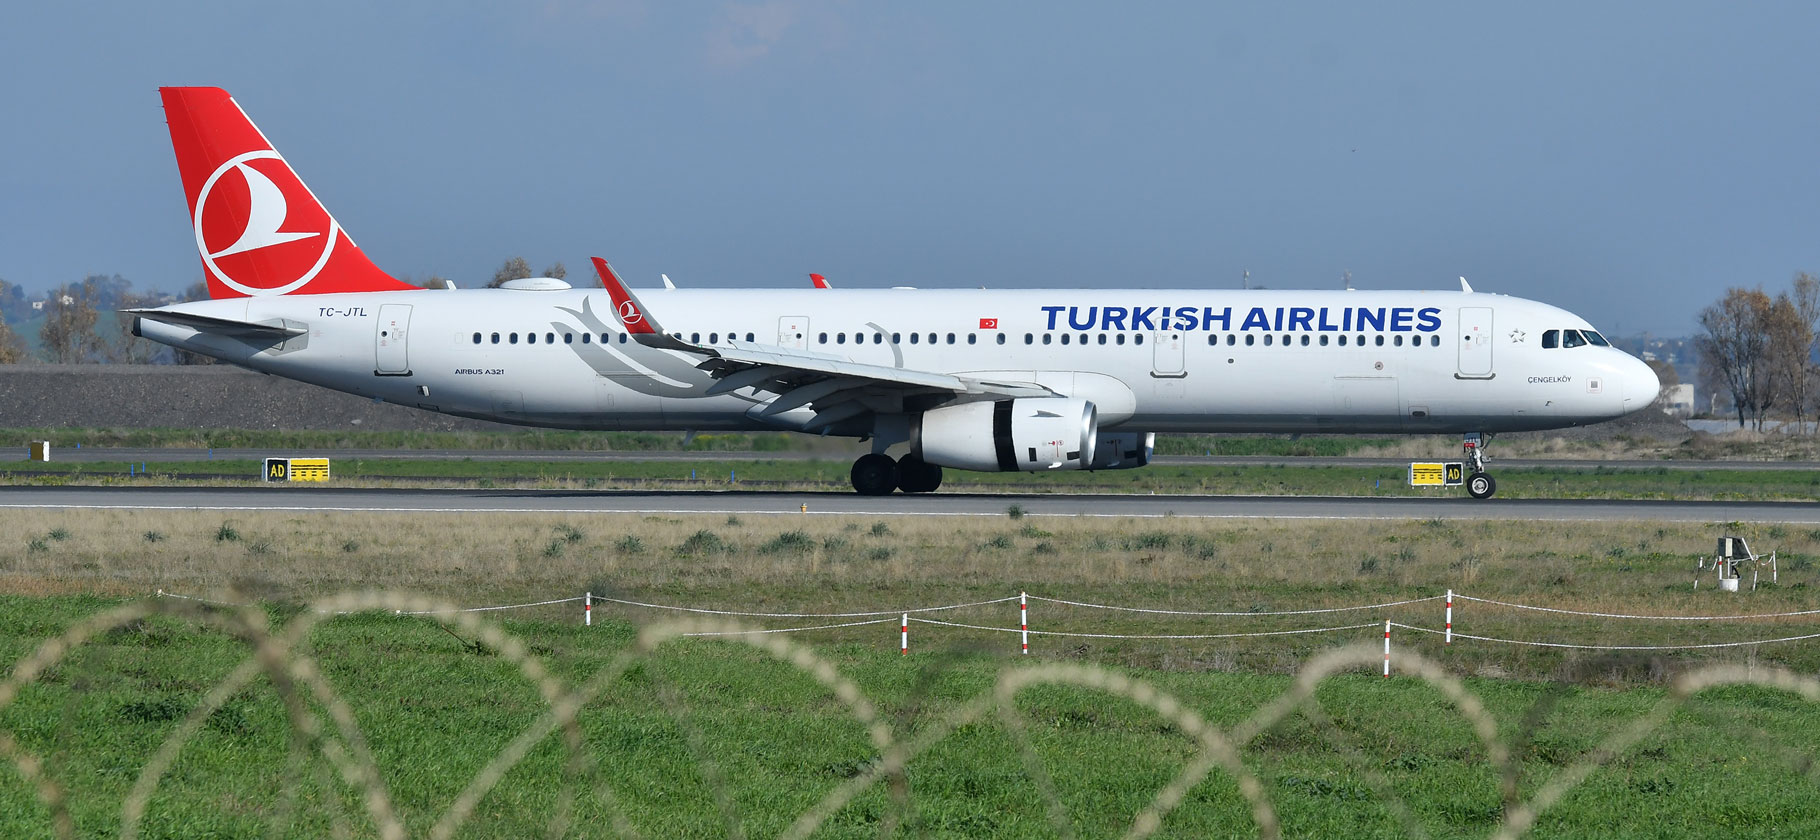 Что известно о недопуске пасса­жиров на рейсы Turkish Airlines